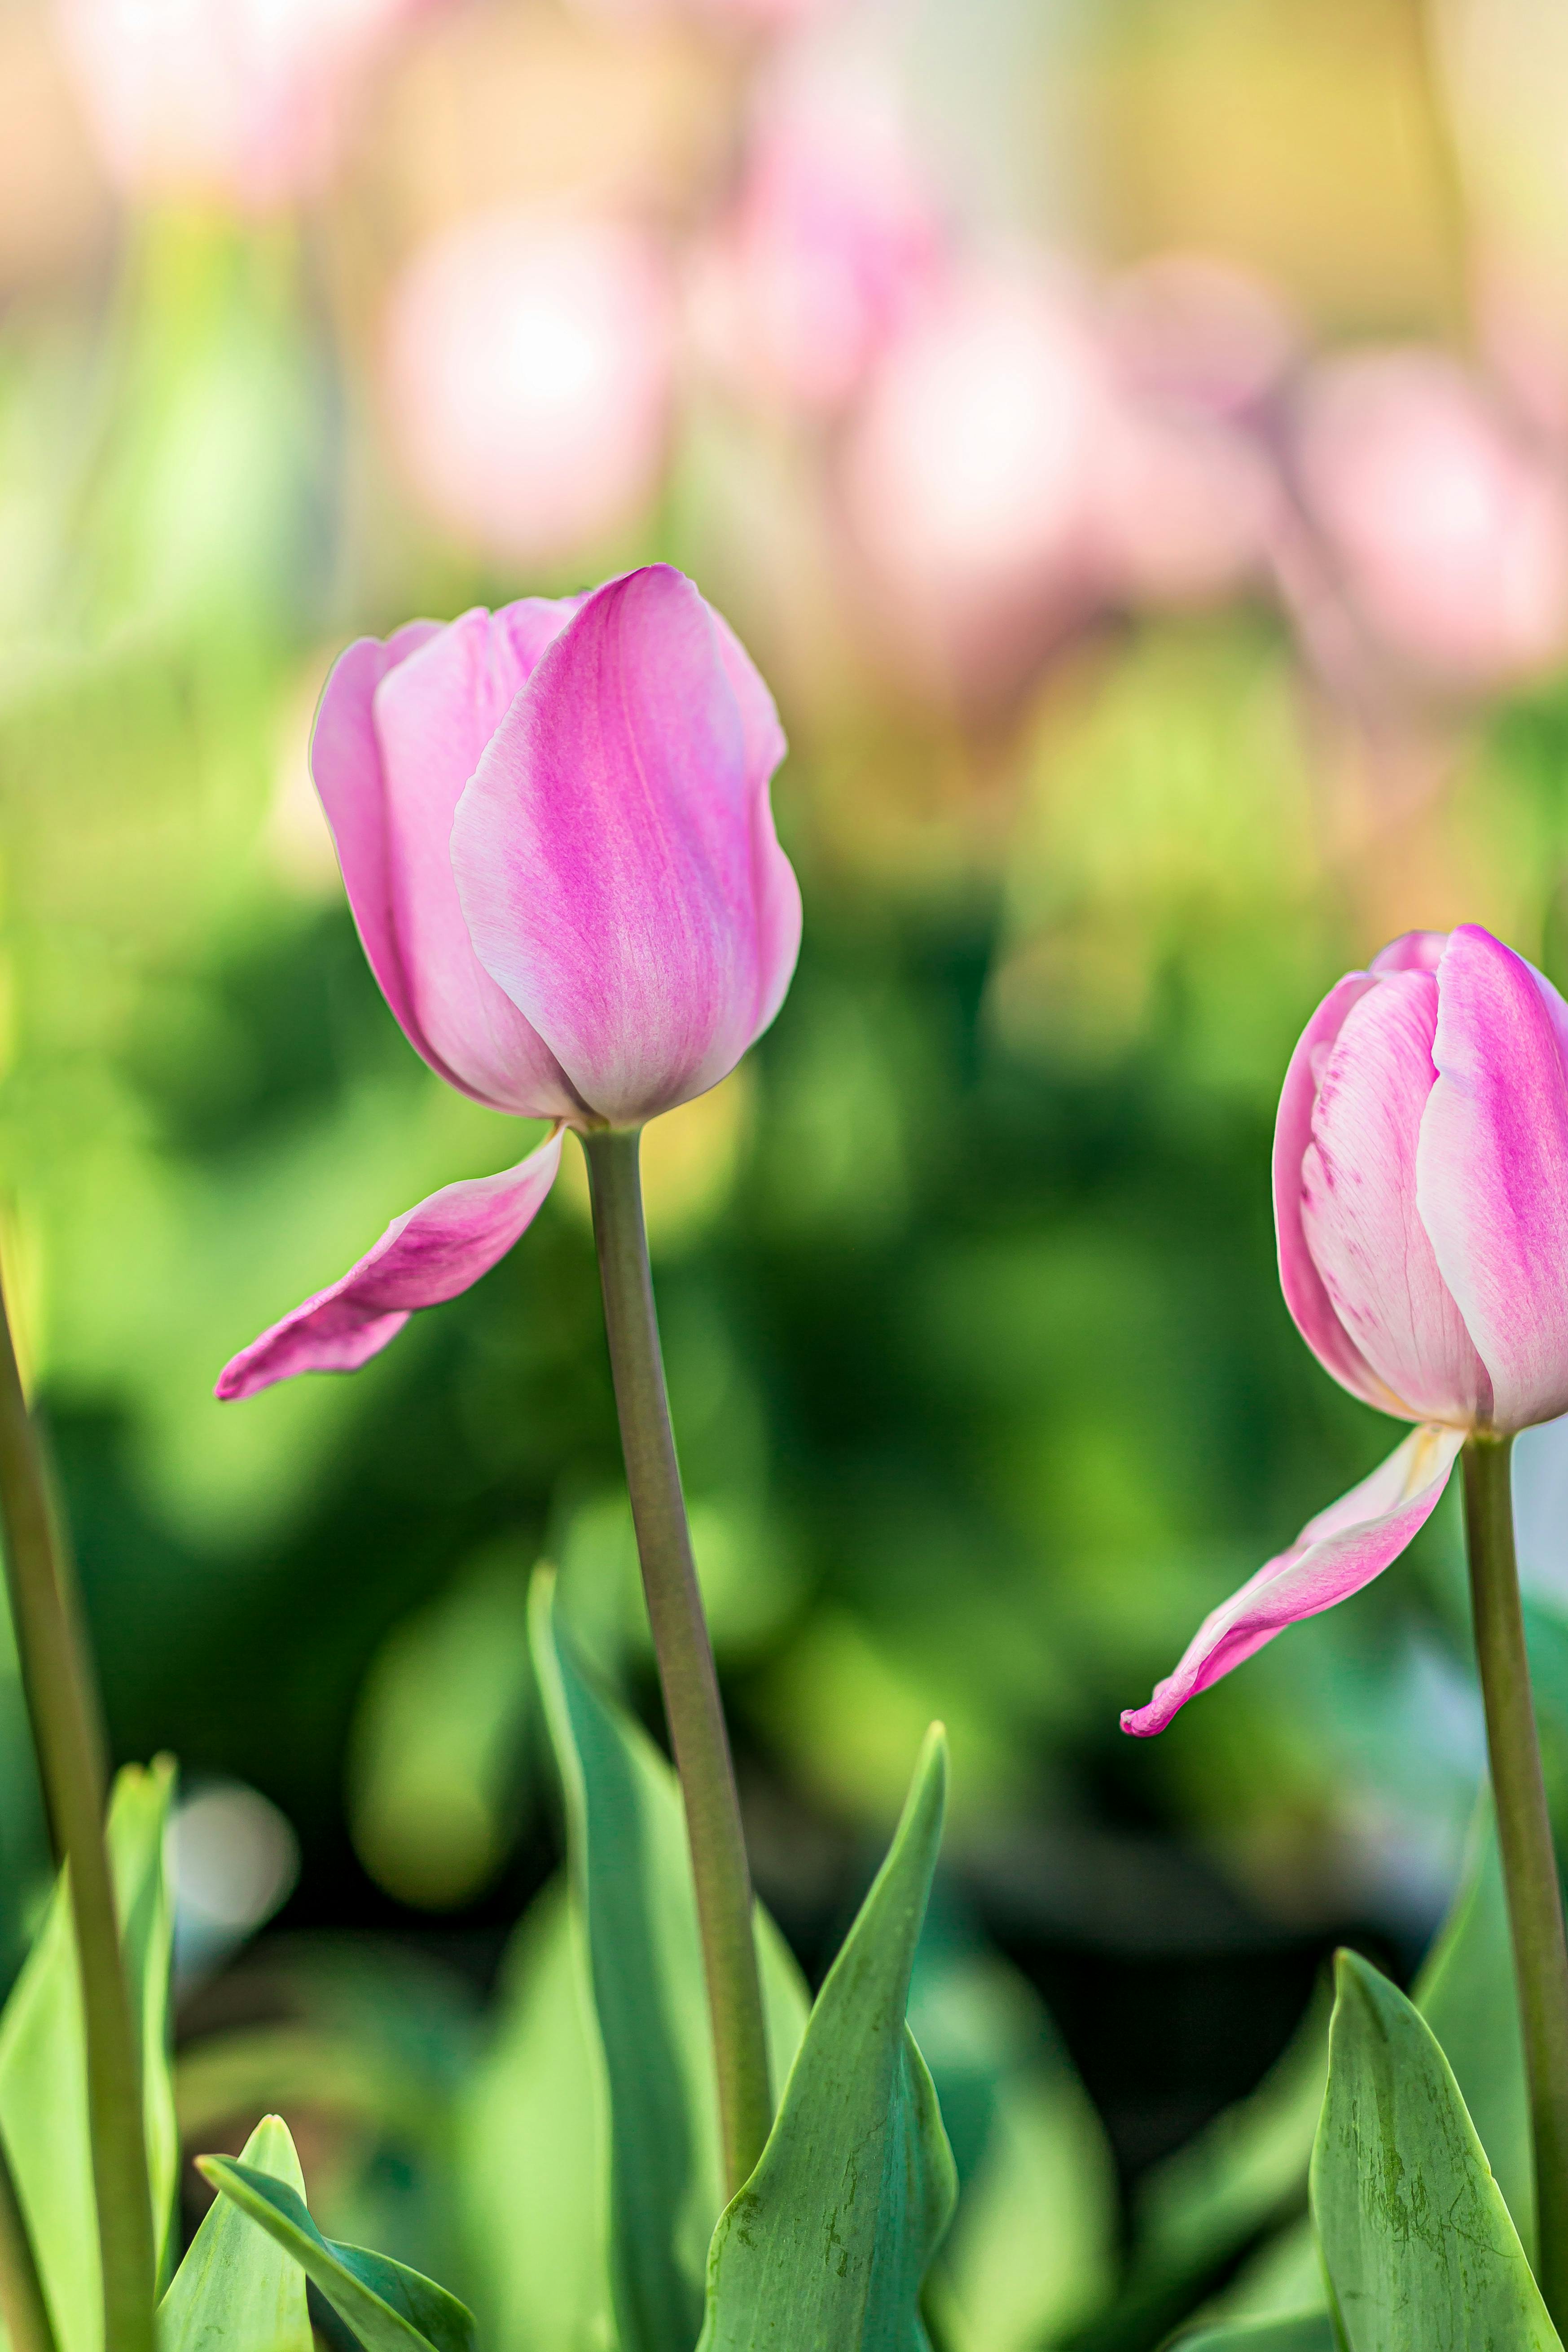 Hoa tulip hồng là một trong những loài hoa sang trọng và đáng yêu nhất. Hãy cùng chiêm ngưỡng sự nghiêng đầu nhẹ nhàng của những bông hoa tulip hồng, để cảm nhận sự đáng yêu và ngọt ngào của chúng trong từng thước hình ảnh.